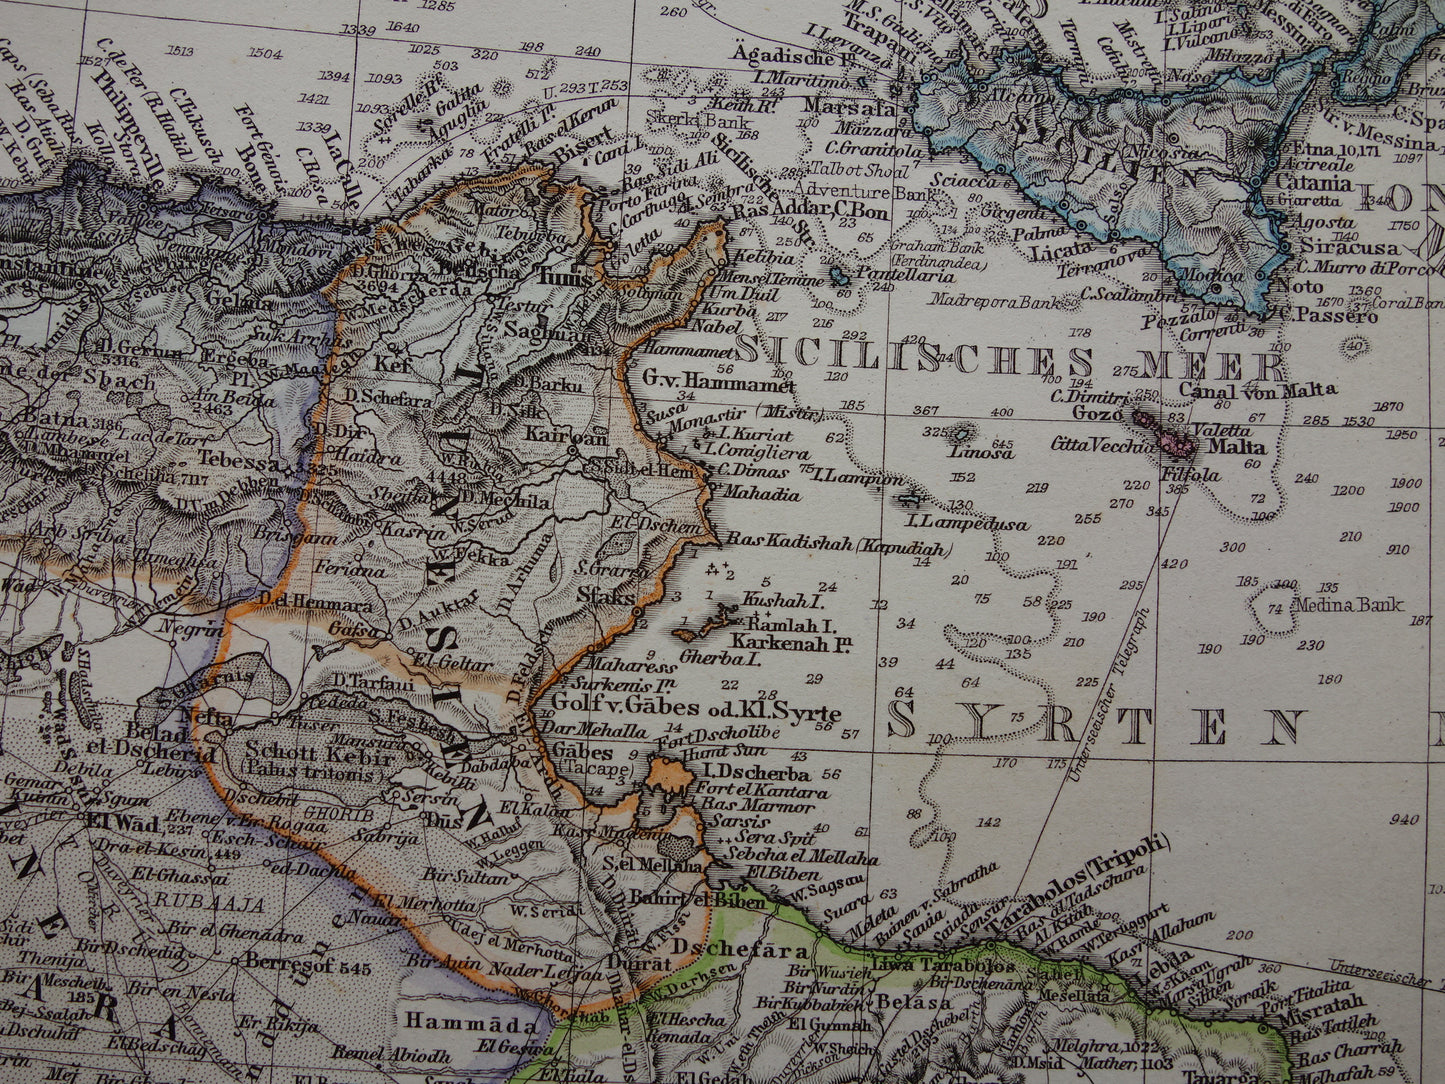 Noord-Afrika oude landkaart van westelijk deel Middellandse Zeegebied uit 1877 originele antieke Duitse kaart van Marokko Algerije Italië Spanje